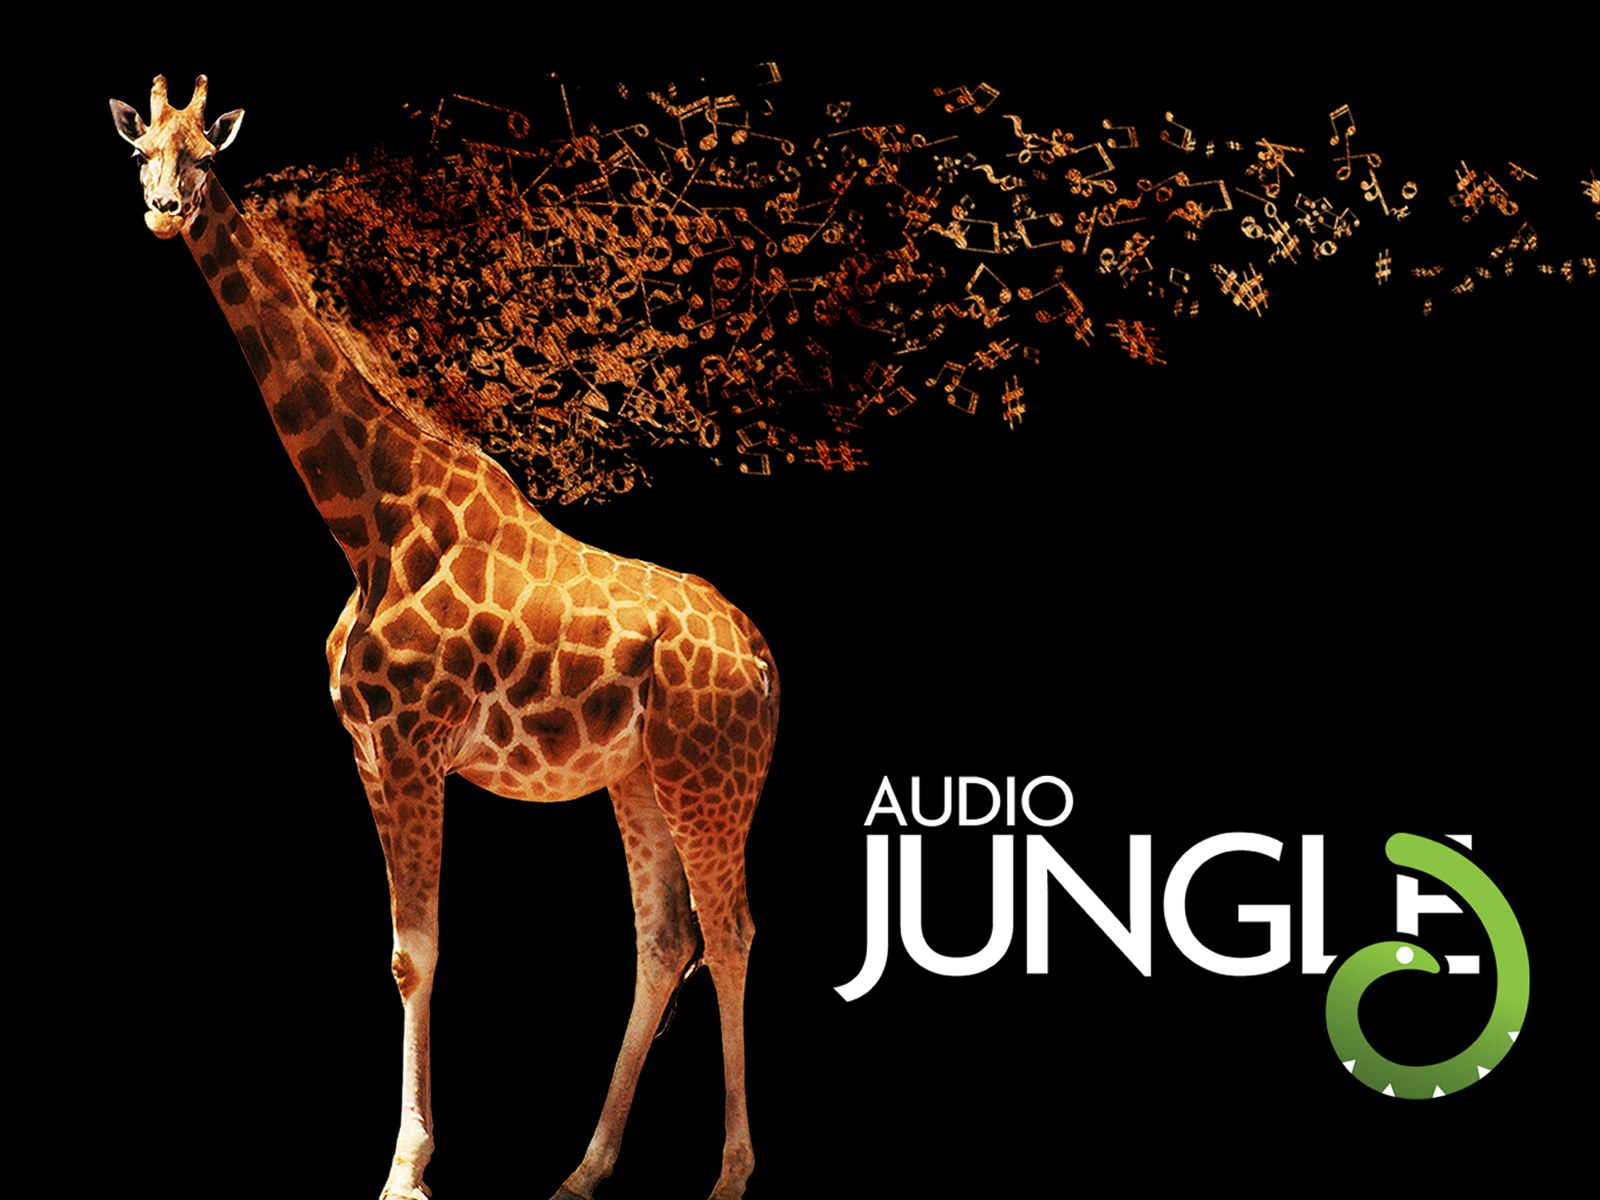 壁纸1600x1200 长颈鹿 Audio Jungle 创意壁纸壁纸 Audio Jungle 主题设计壁纸壁纸 Audio Jungle 主题设计壁纸图片 Audio Jungle 主题设计壁纸素材 插画壁纸 插画图库 插画图片素材桌面壁纸